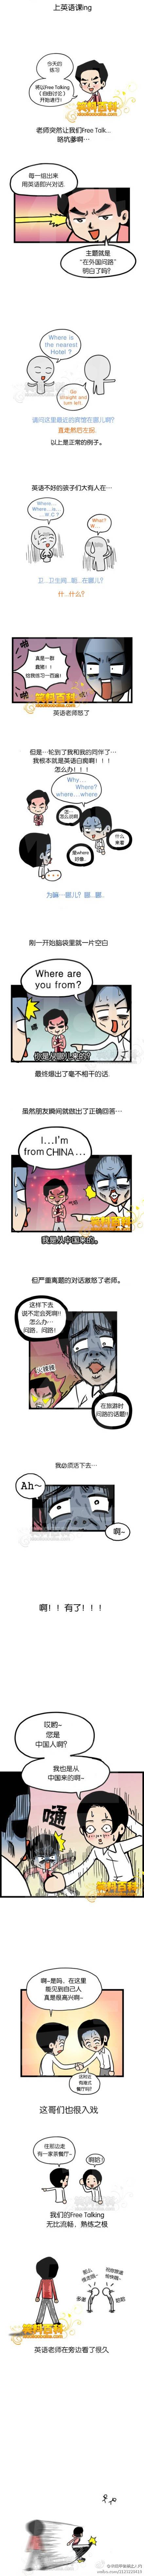 邪恶漫画爆笑囧图第35刊：舞蹈